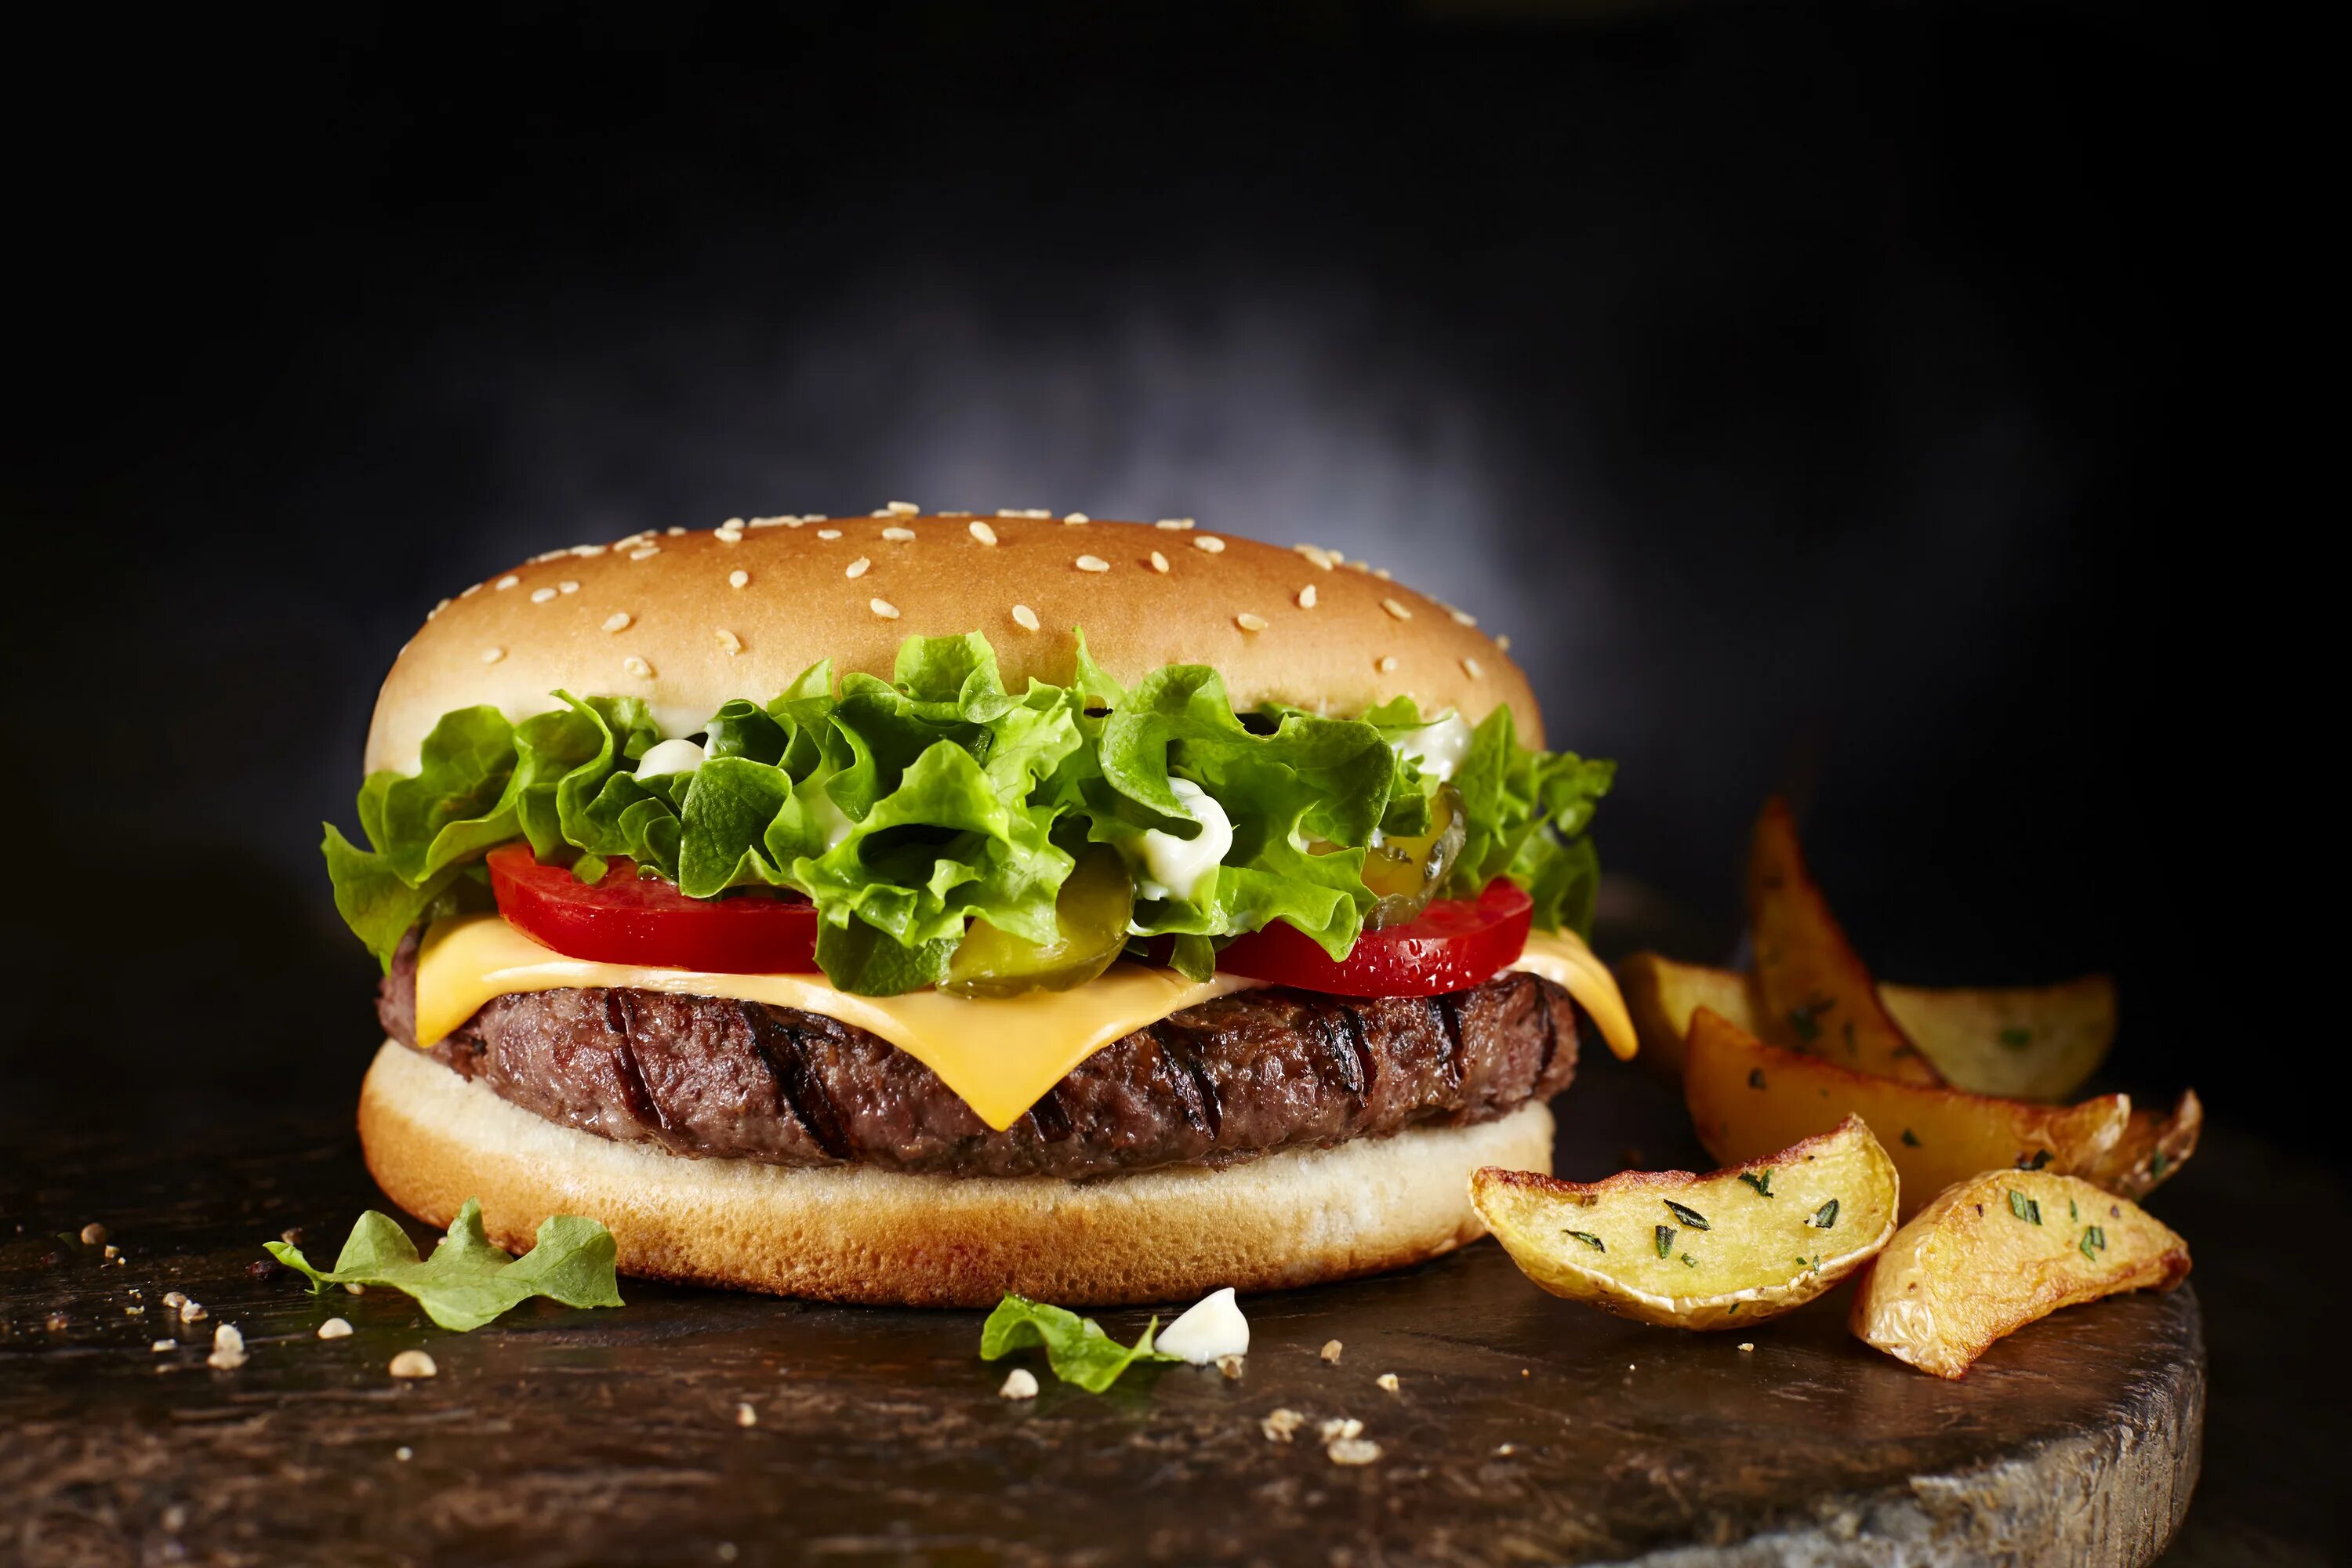 Гамбургер 4. Fast-food — фаст-фуд, Cheeseburger — чизбургер, hot-Dog — хот-дог. Сочные бургеры. Красивый гамбургер. Чизбургер на черном фоне.